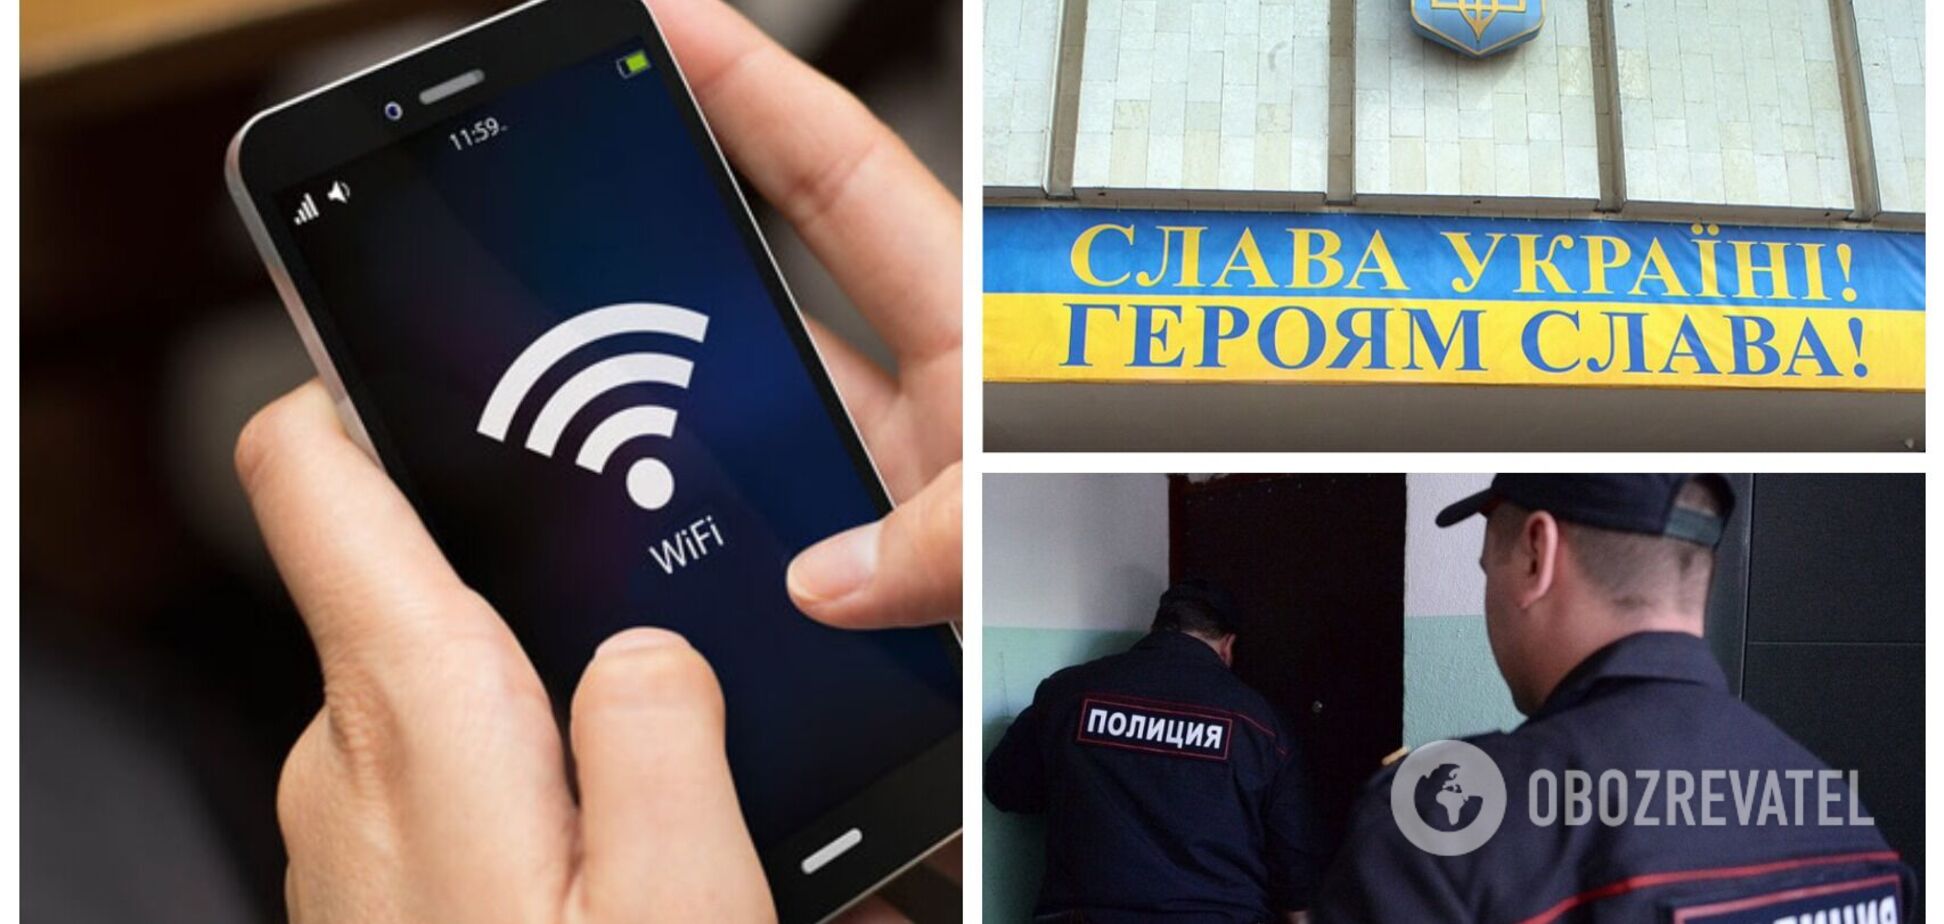 В Москве неизвестный назвал точку Wi-Fi 'Слава Украине', на него сразу донесли: 'злоумышленника' ищет полиция